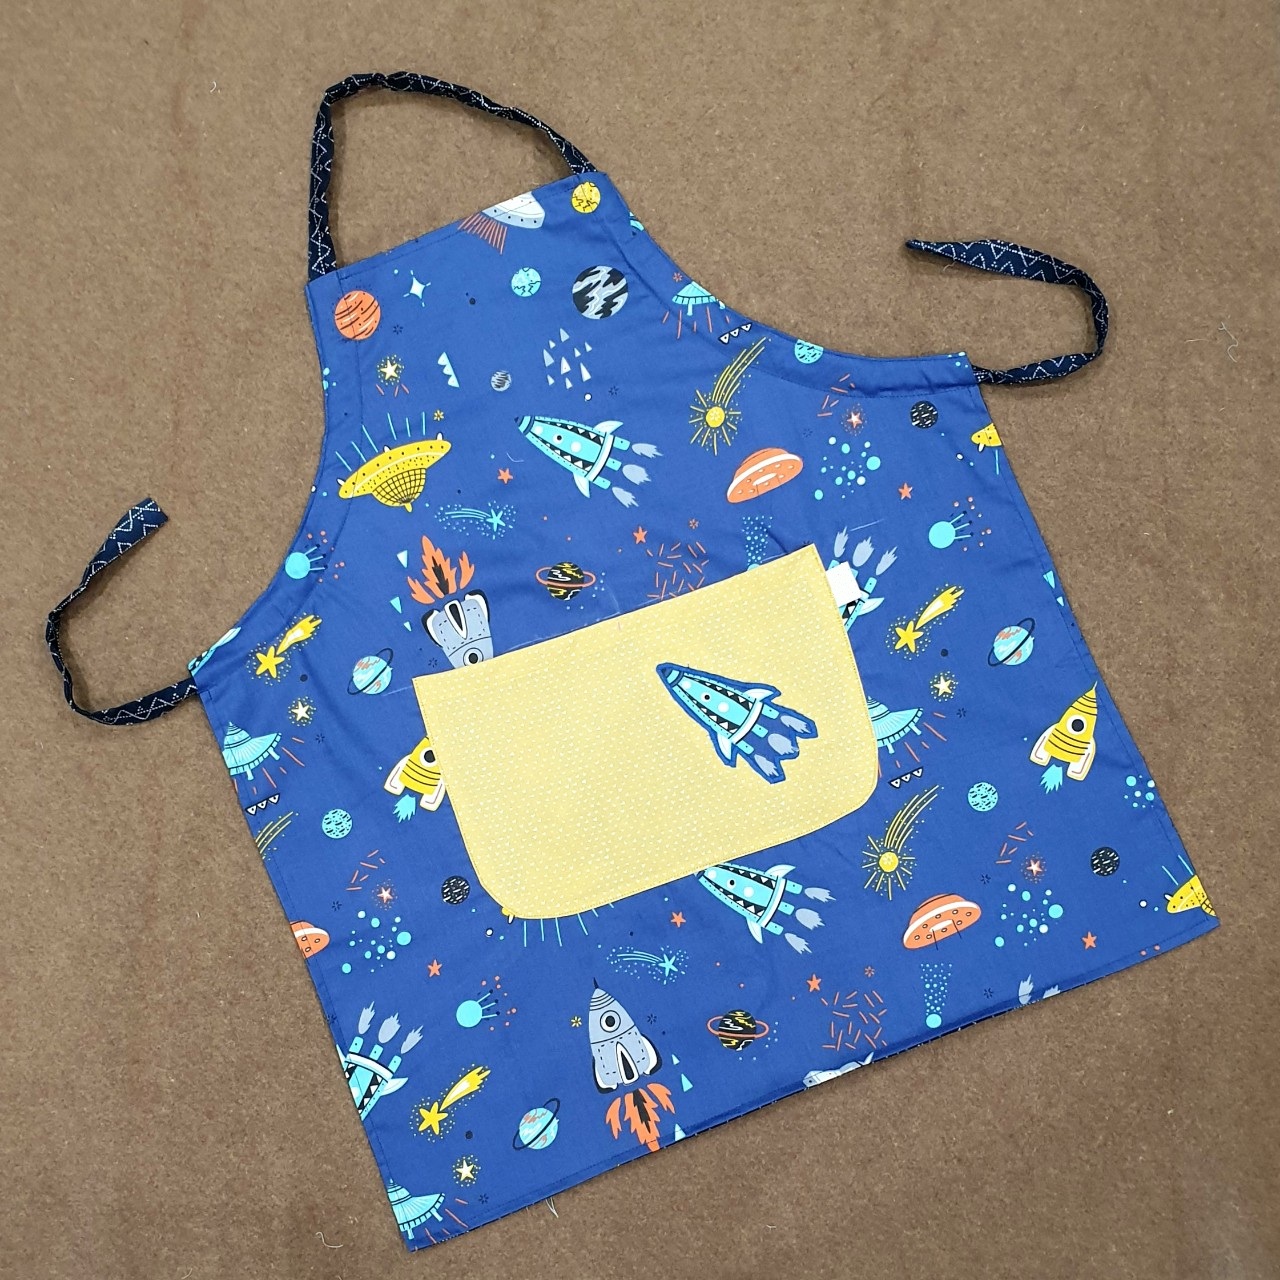 Tạp dề nấu ăn học vẽ handmade dùng được 2 mặt mẫu vũ trụ phi thuyền cá tính cho bé trai bé gái